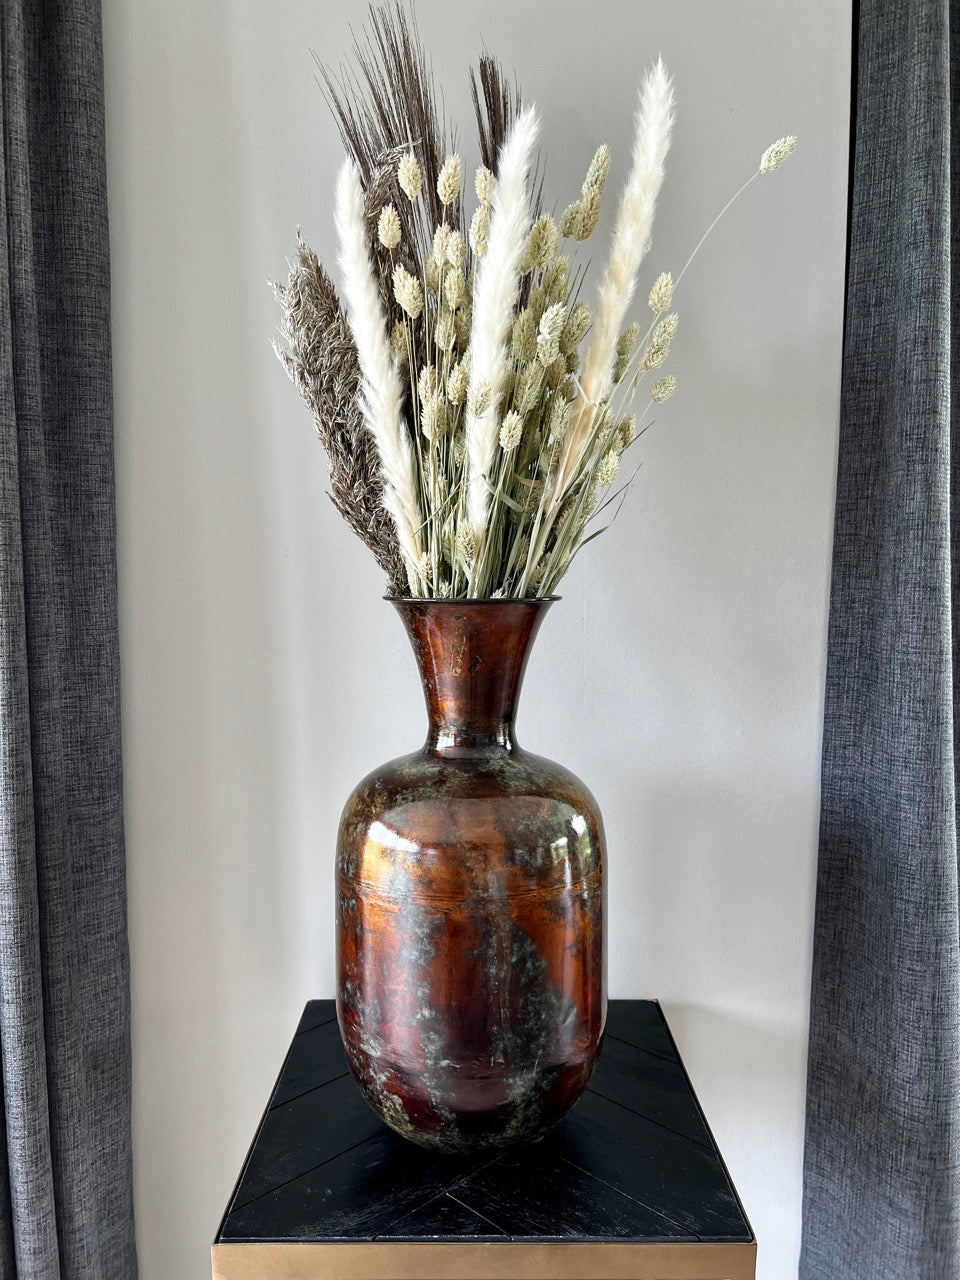 Vase “Antique Bronze” - 37 cm high - Bronze/Green metal